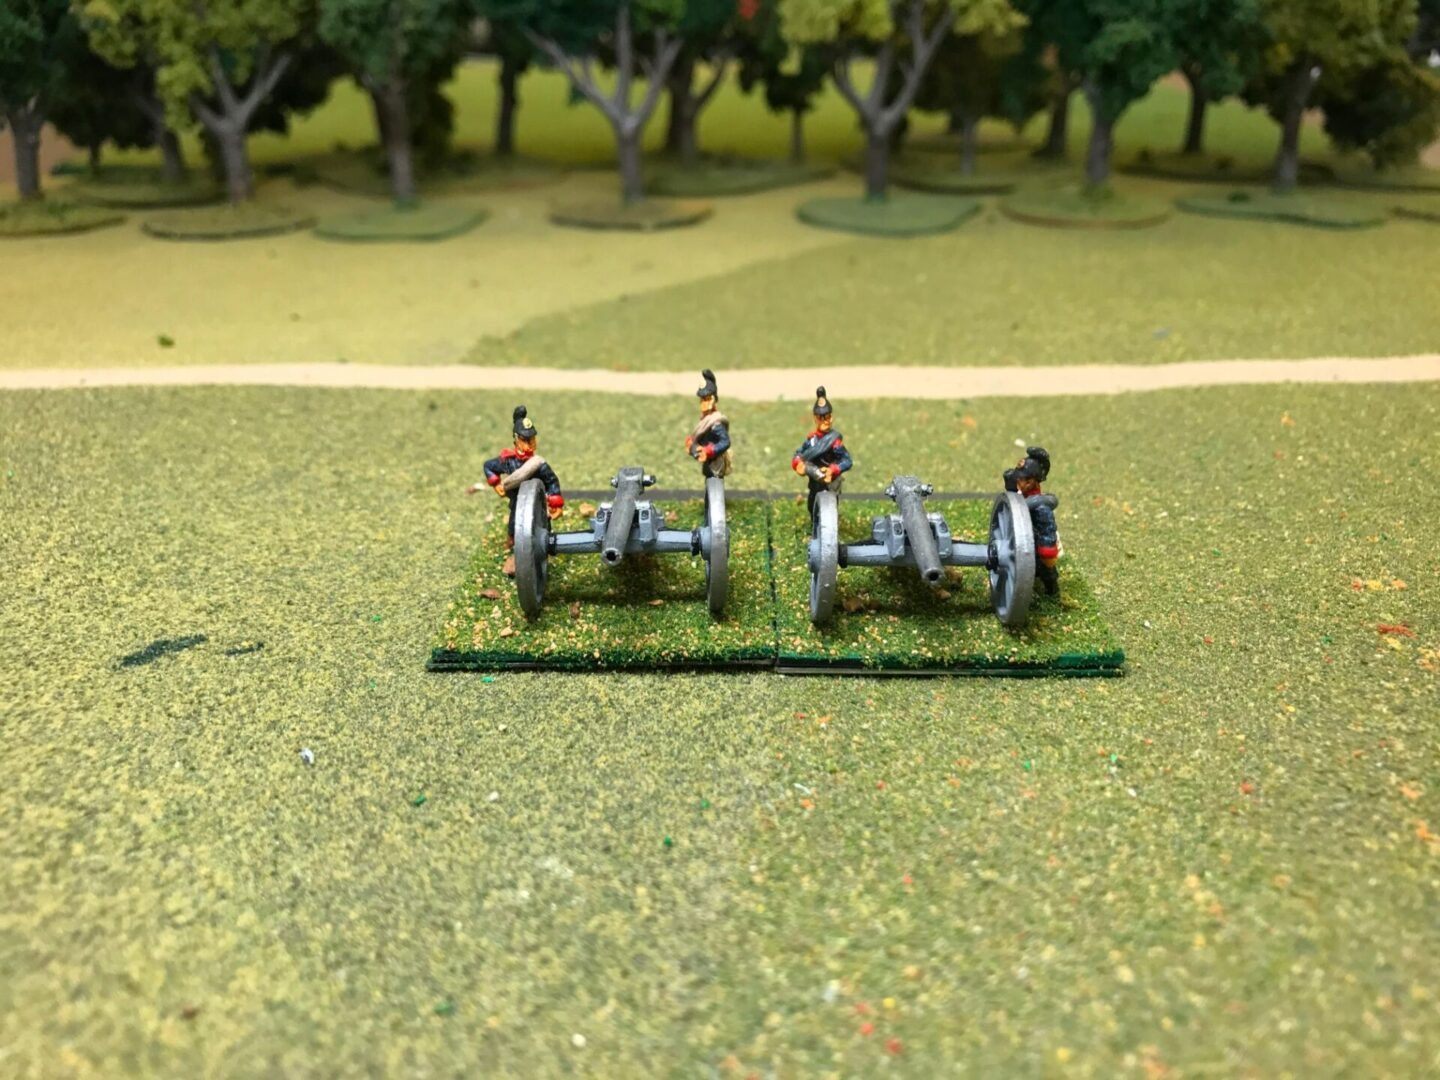 Bavarian Artillery